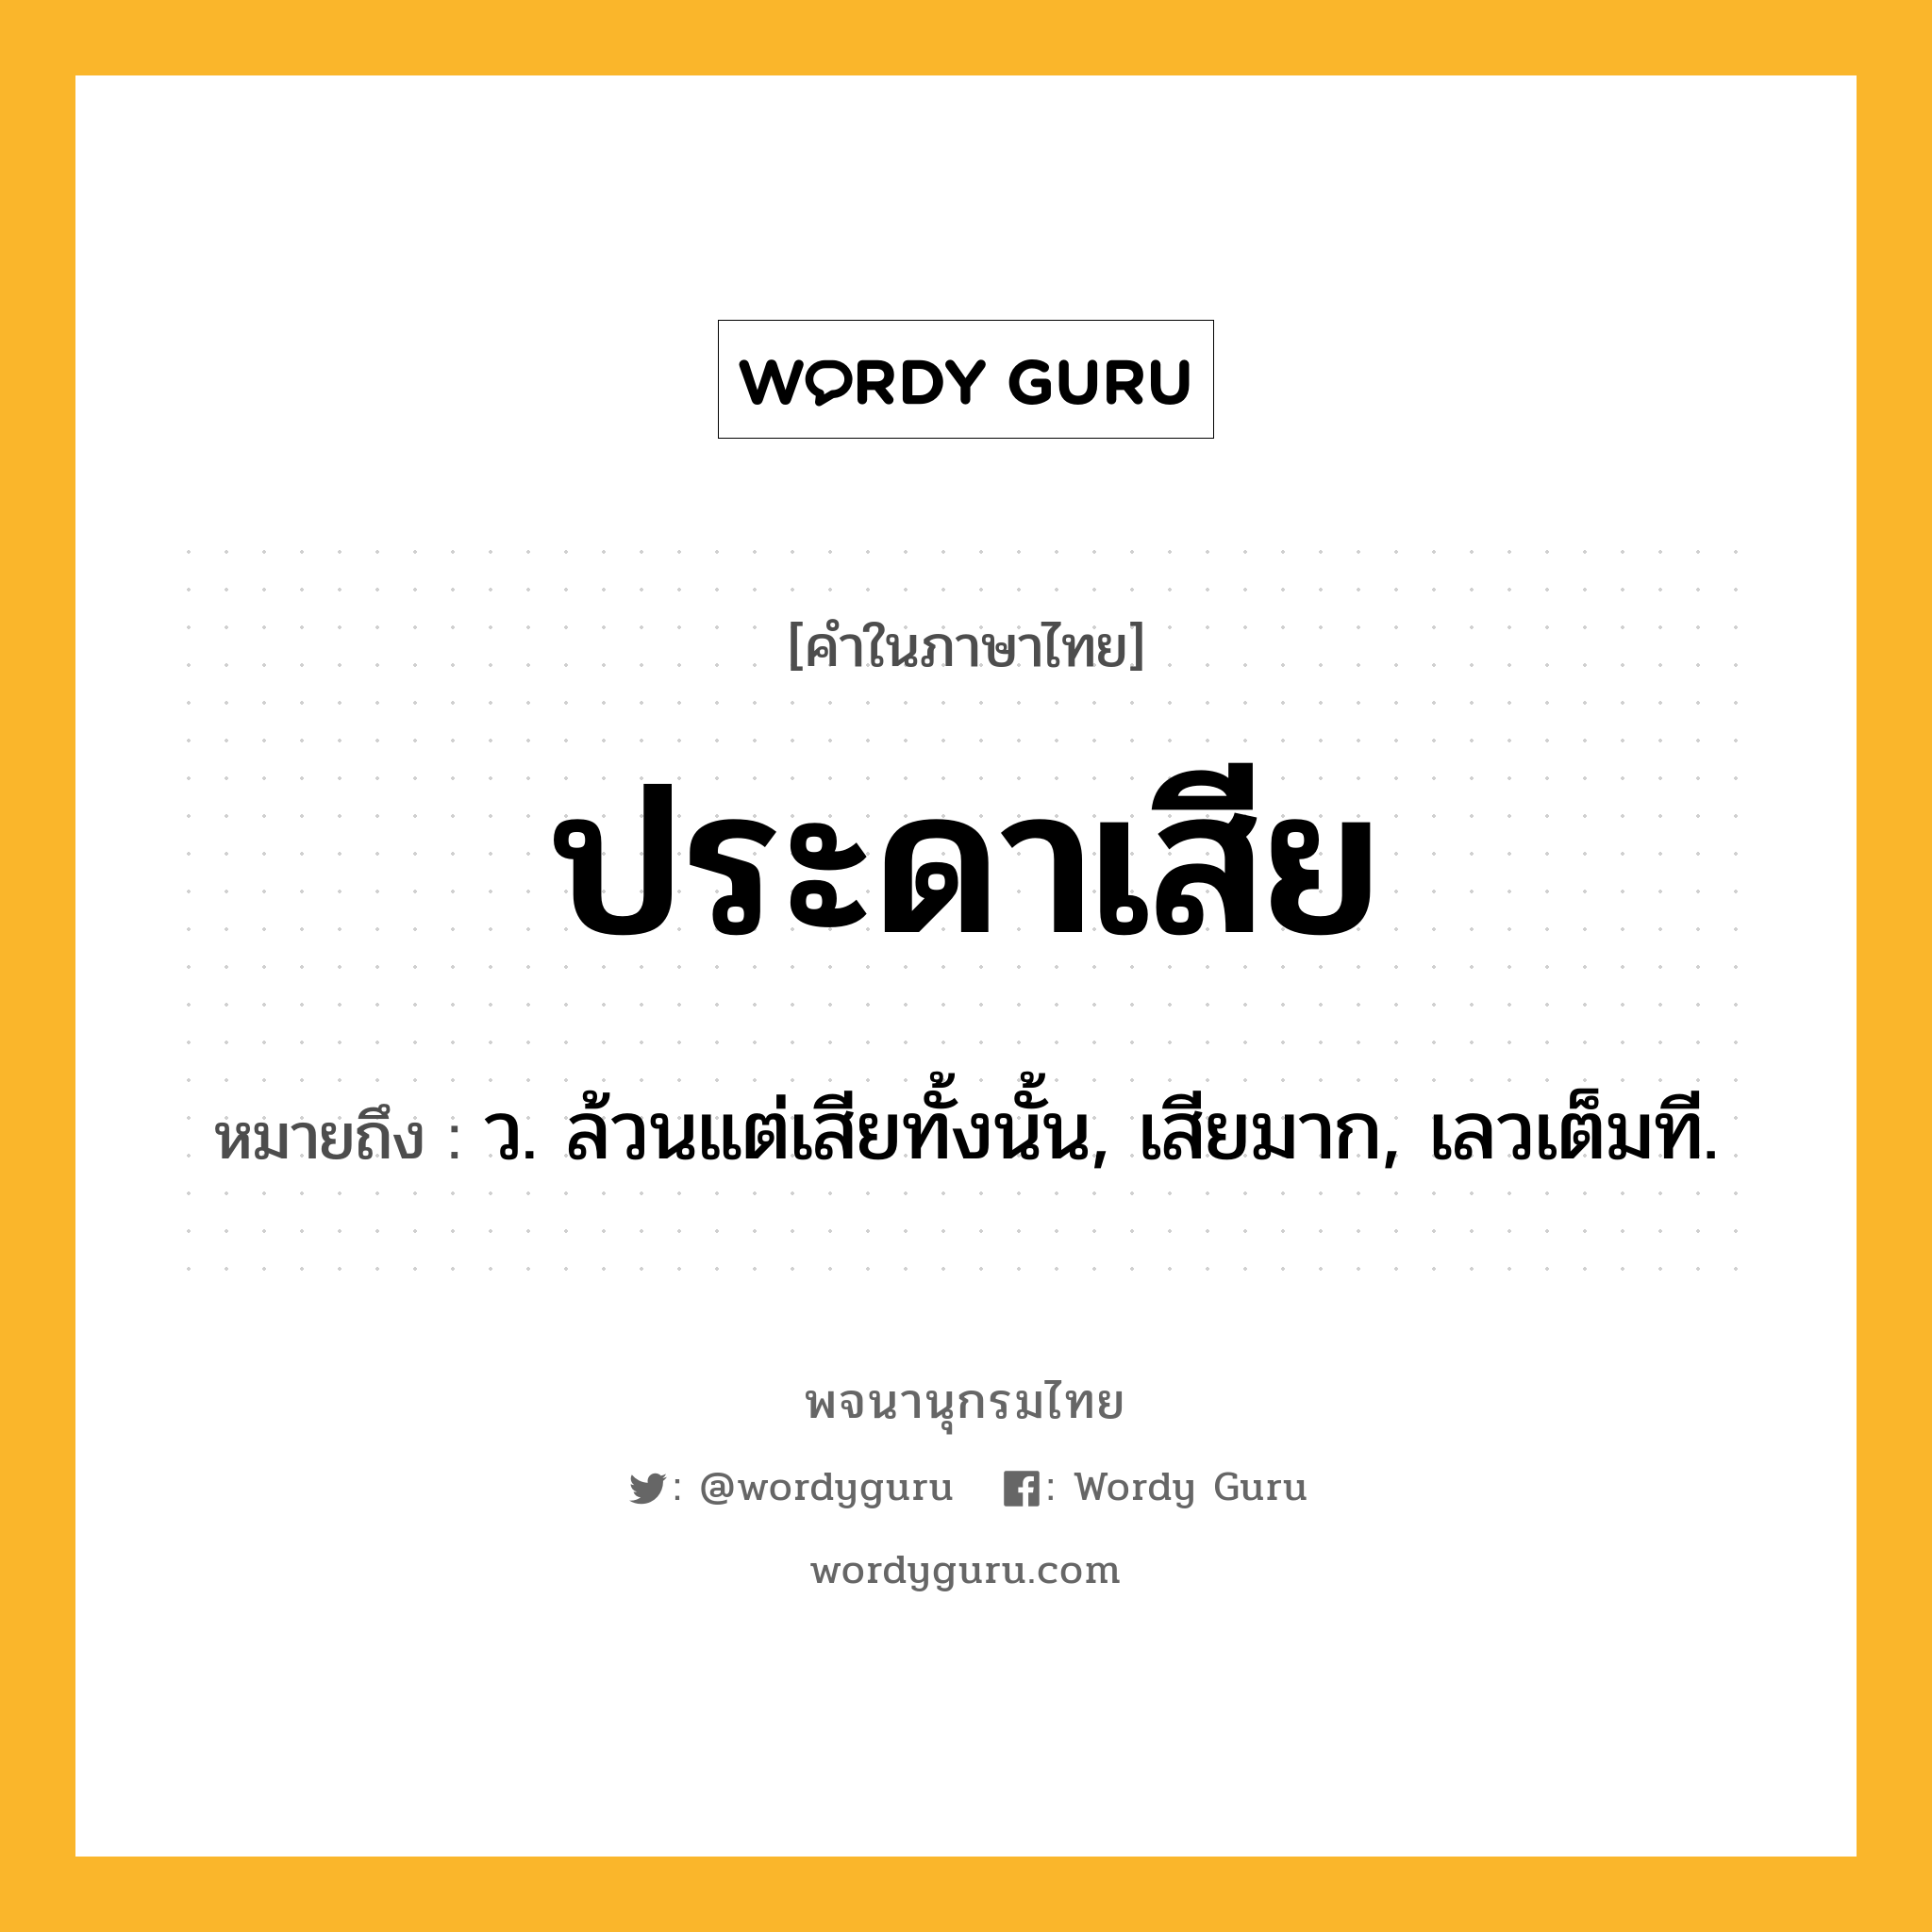 ประดาเสีย ความหมาย หมายถึงอะไร?, คำในภาษาไทย ประดาเสีย หมายถึง ว. ล้วนแต่เสียทั้งนั้น, เสียมาก, เลวเต็มที.